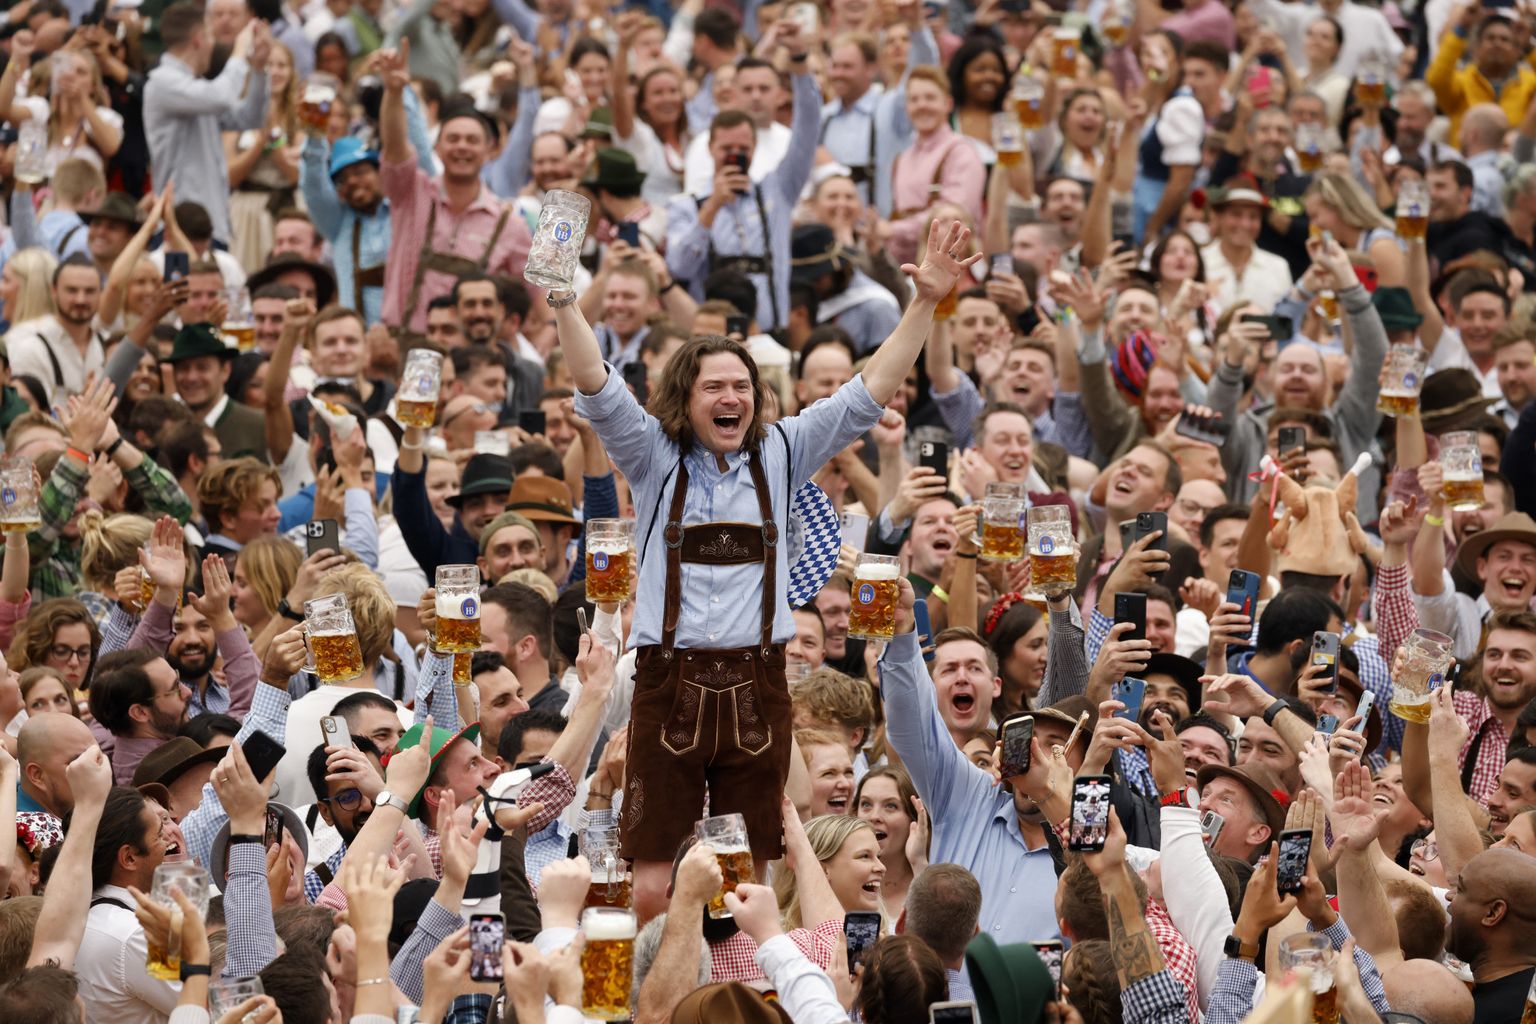 Külastaja juubeldab pärast õllekruusi tühjaksjoomist maailma suurima õllefestivali, 187. Oktoberfesti ametliku avamise ajal 17. septembril 2022 Saksamaal Münchenis.